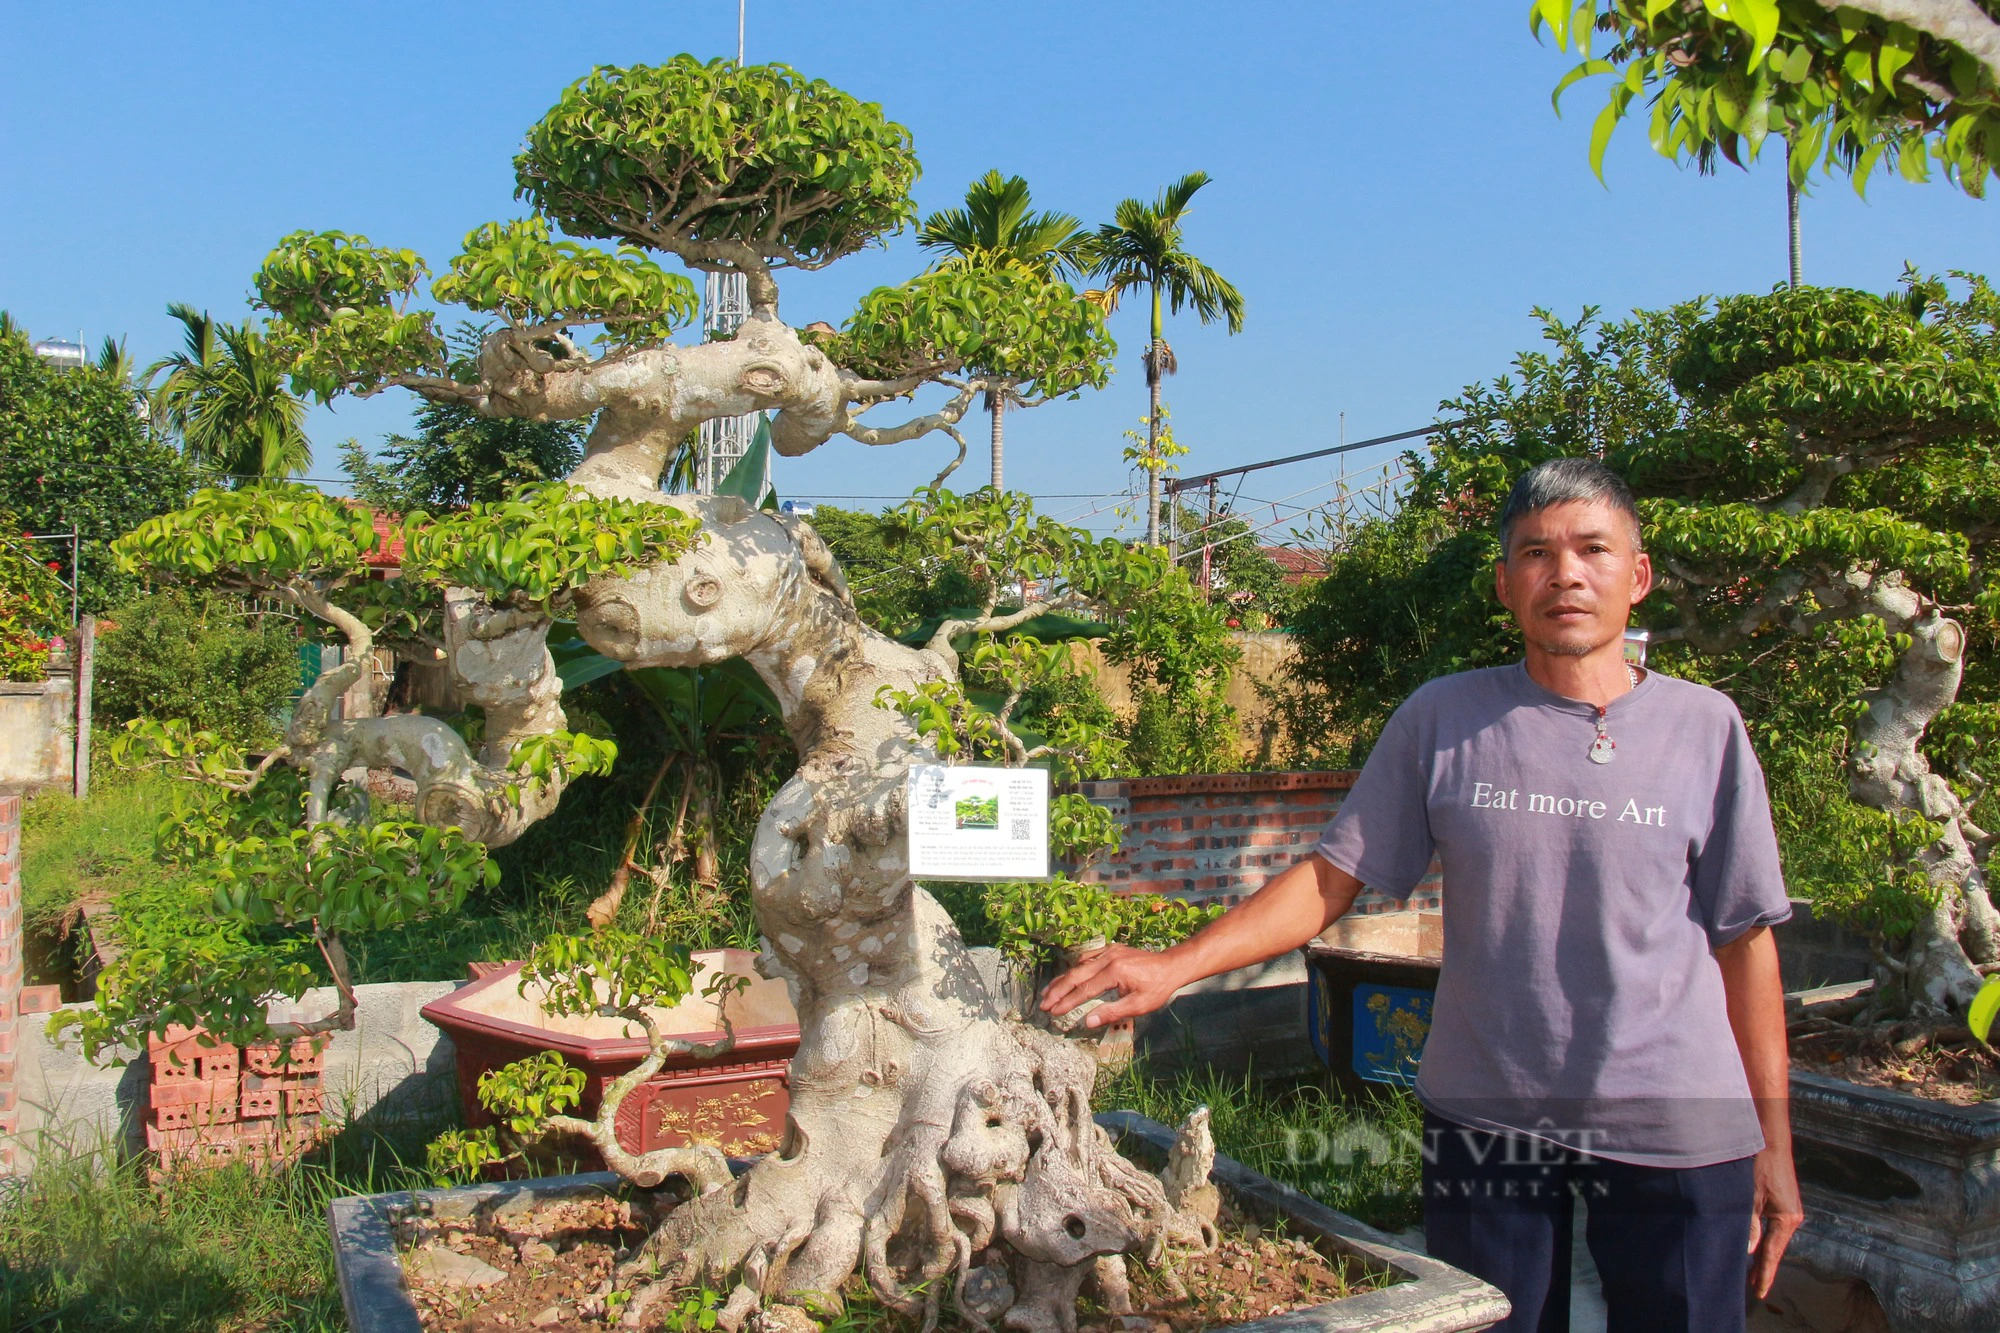 Chăn nuôi không hiệu quả, anh nông dân Nam Định chuyển sang kinh doanh cây cảnh, nào ngờ thắng lớn - Ảnh 4.